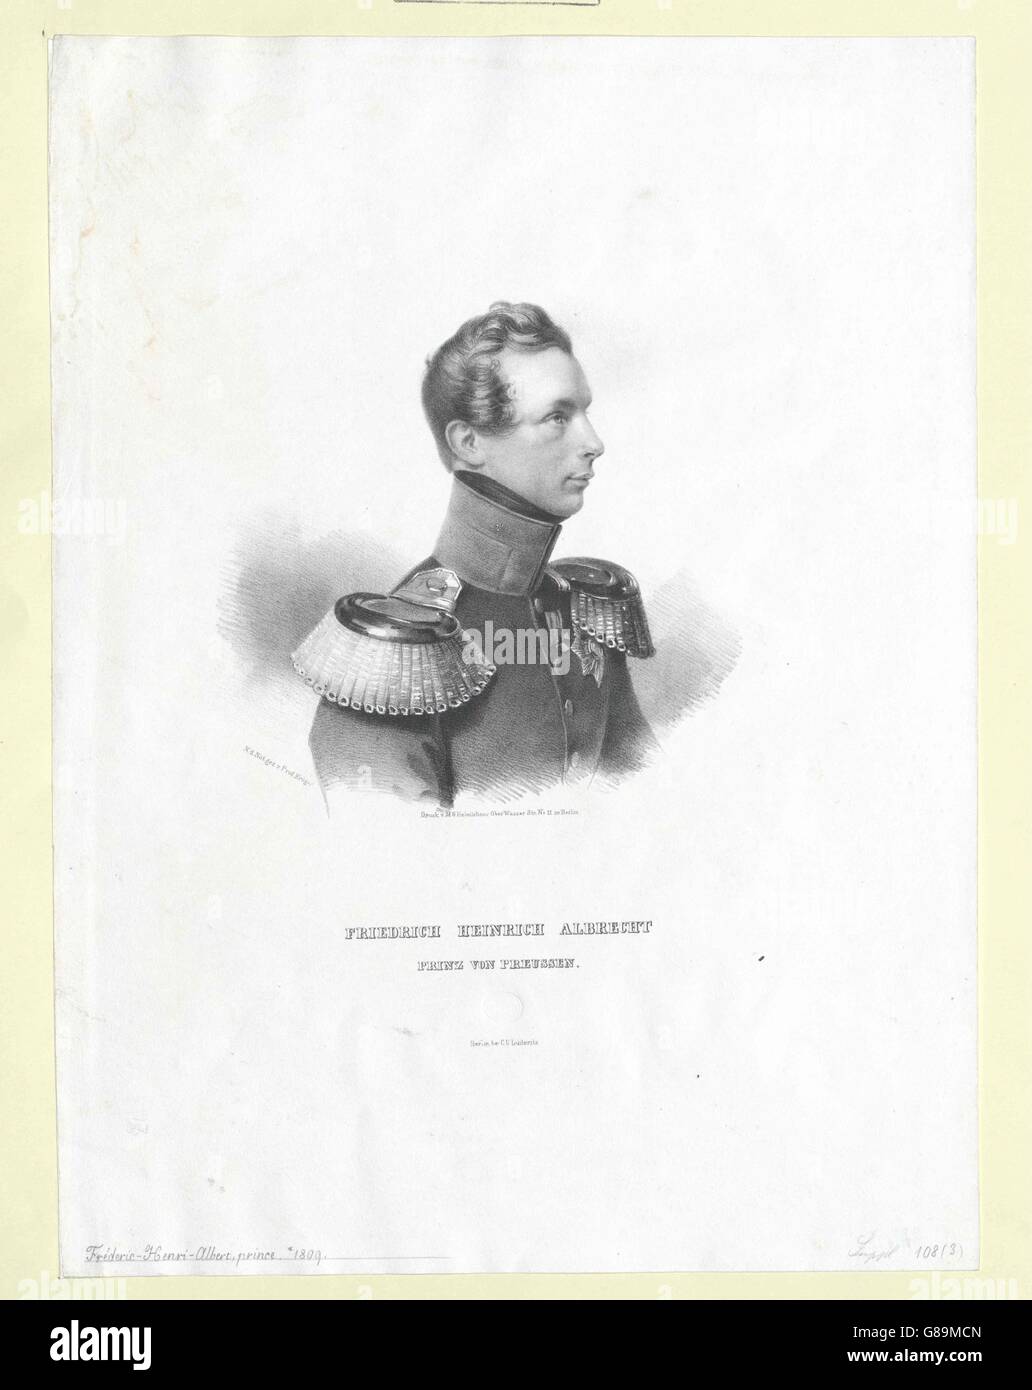 Albrecht, Prinz von Preussen Stock Photo